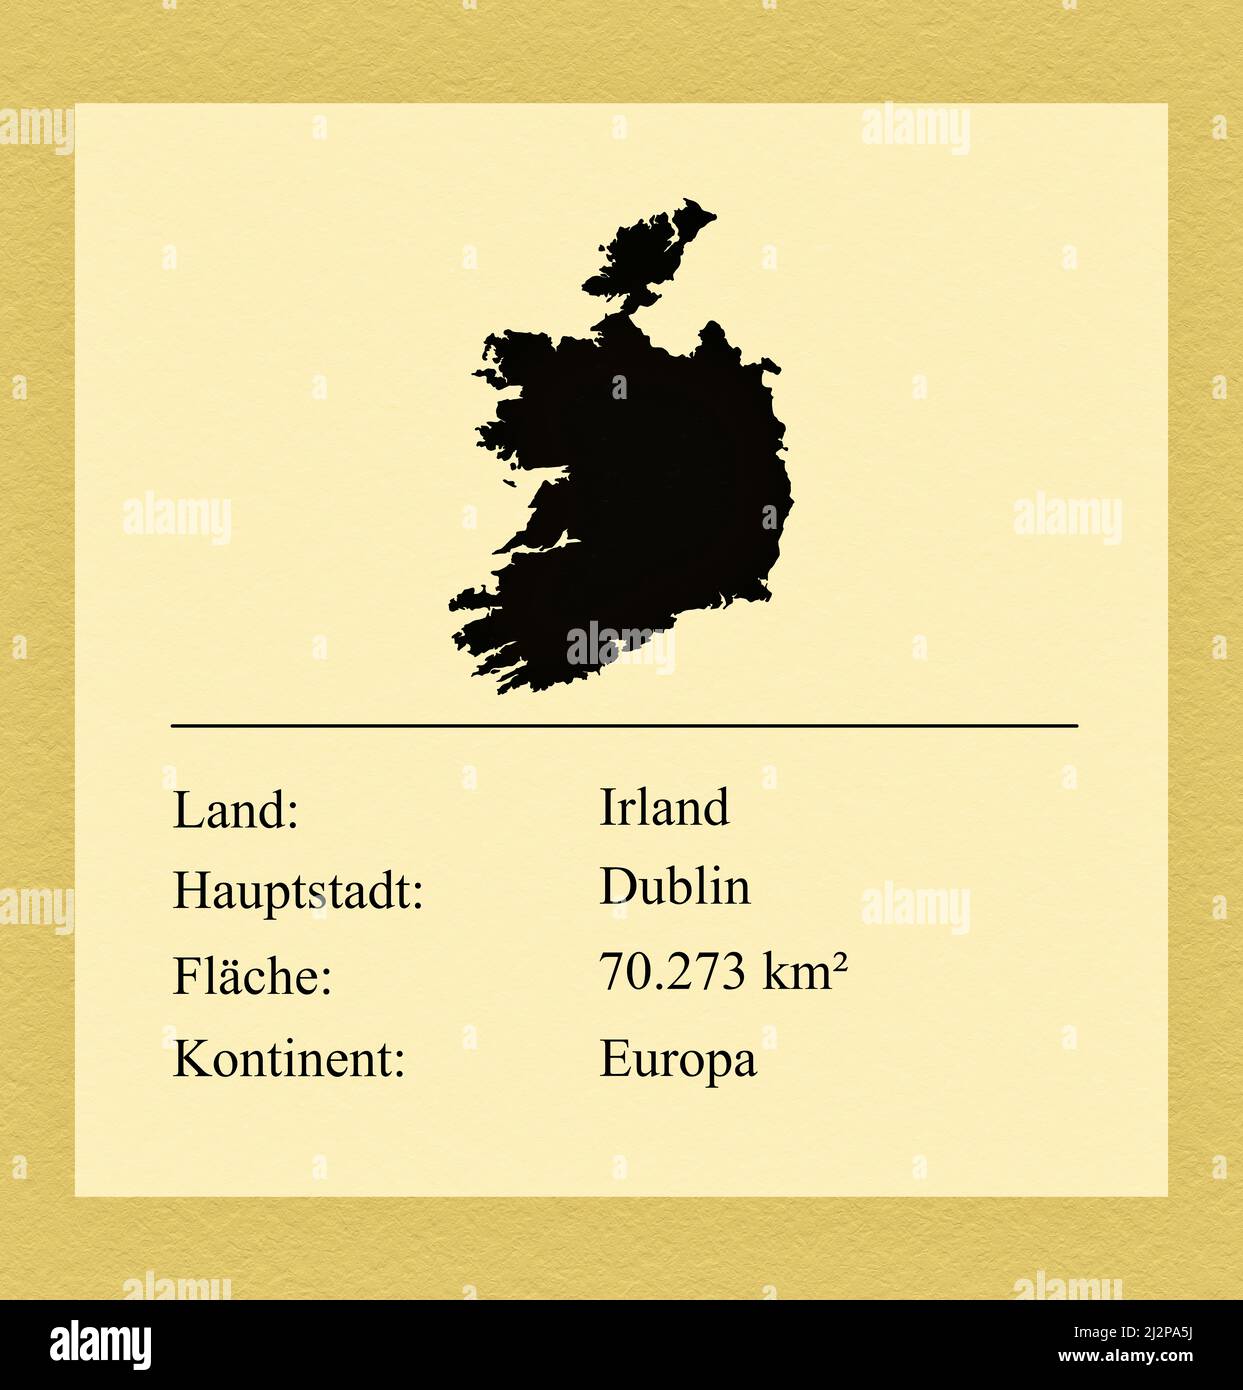 Umrisse des Landes Irland, darunter ein kleiner Steckbrief mit Ländernamen, Hauptstadt, Fläche und Kontinent Stock Photo